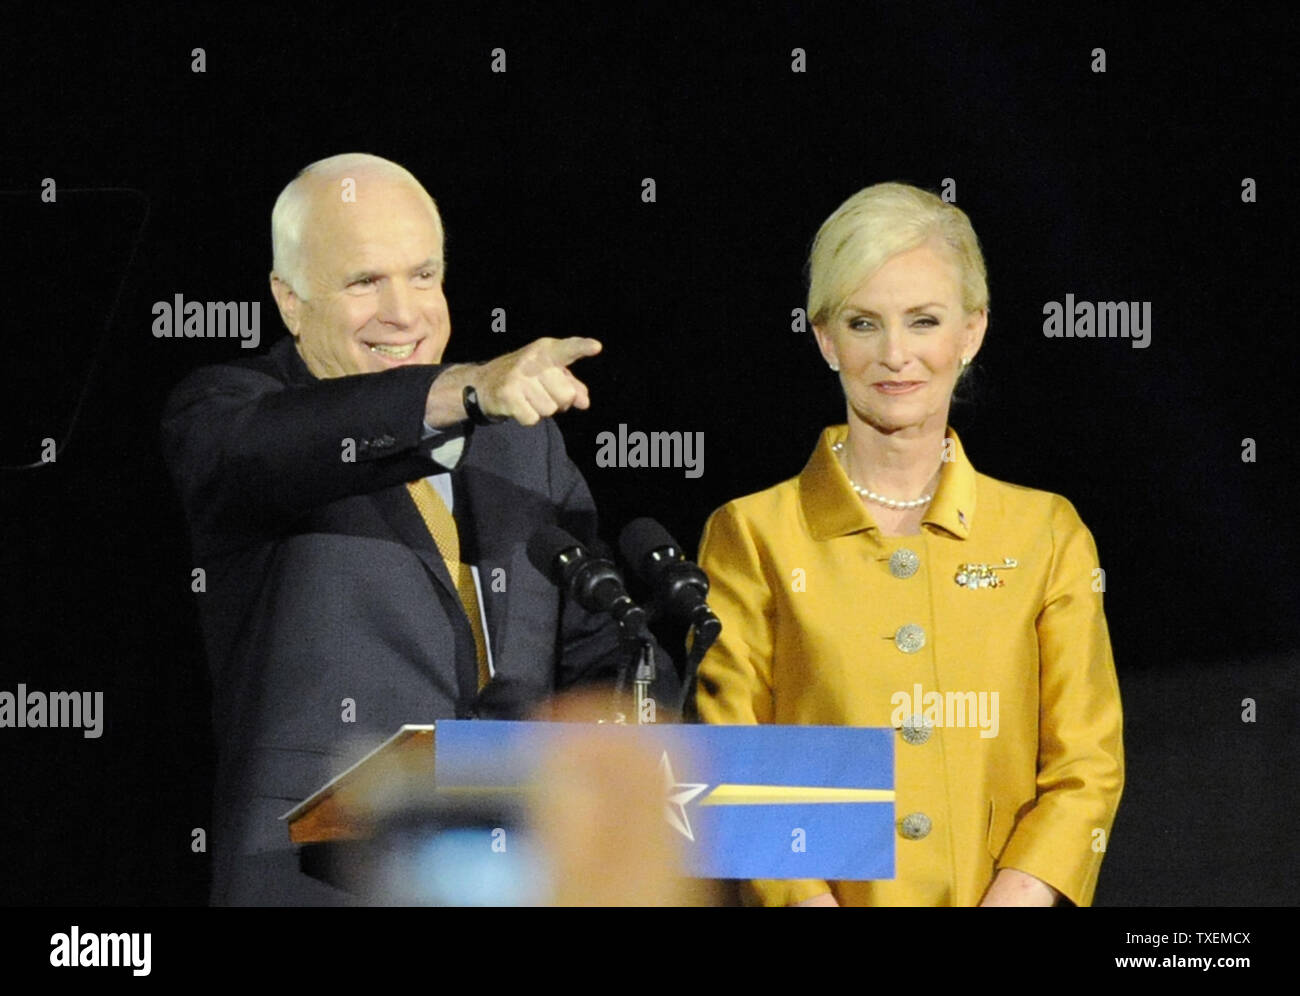 Candidato presidenziale repubblicano John McCain (R-AZ) offre la sua concessione discorso, insieme con sua moglie Cindy (R) presso l'Arizona Biltmore Hotel a Phoenix, in Arizona il 4 novembre 2008. Il Sen. Barack Obama (D-il) saranno gli Stati Uniti 44th e primo presidente afro-americano. (UPI foto/Alexis C. Glenn) Foto Stock